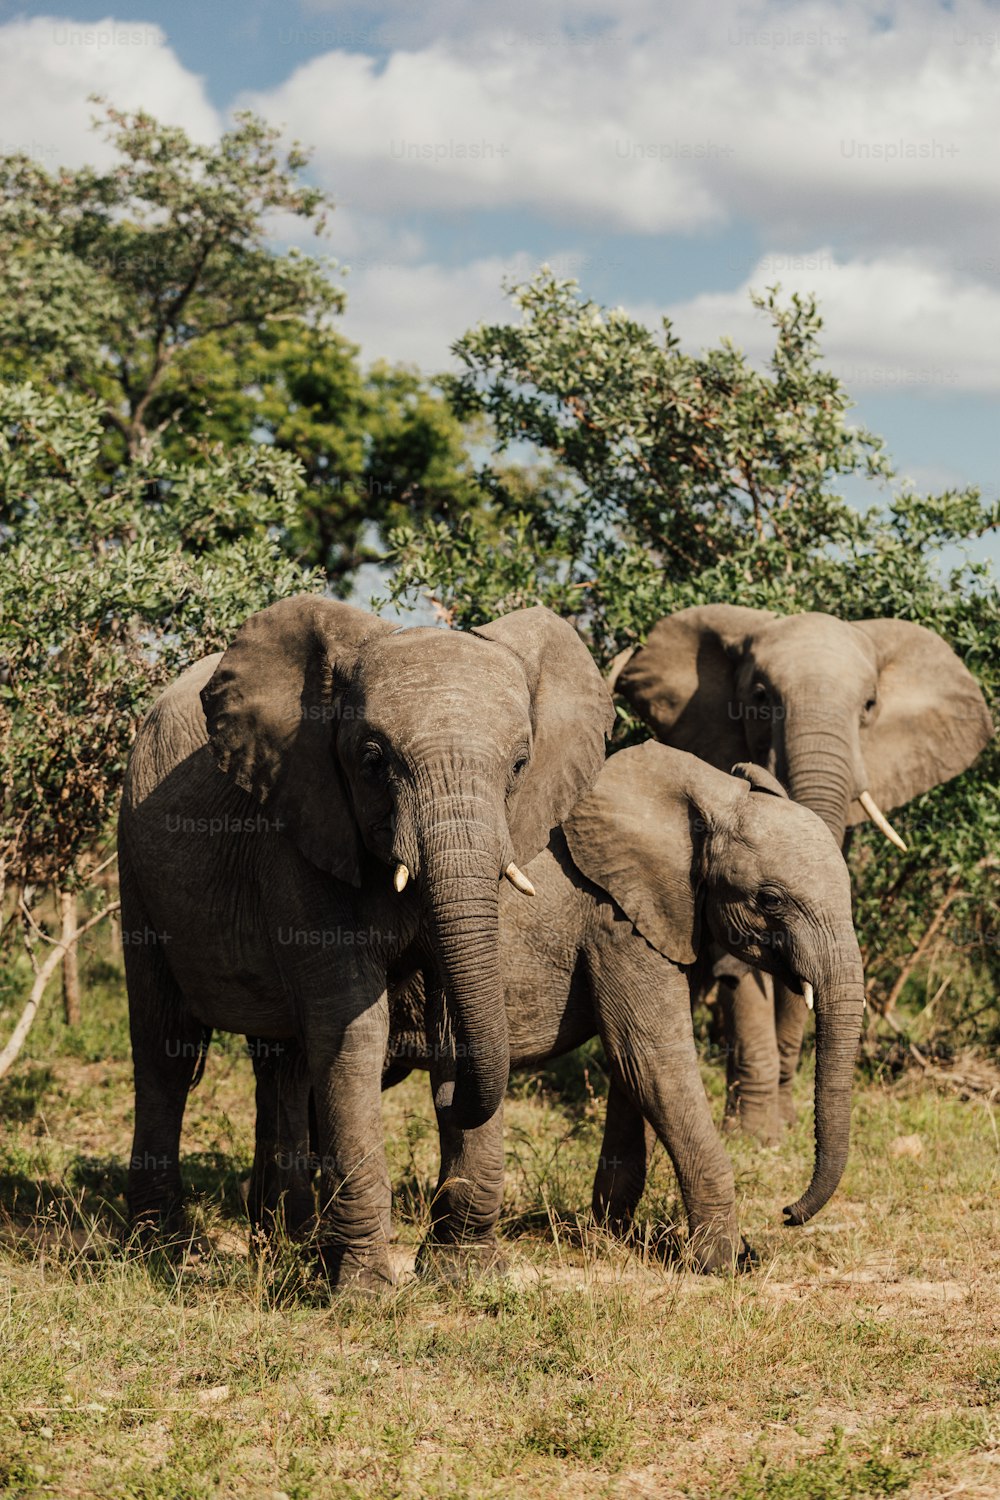 Un groupe d’éléphants se tient dans un champ herbeux